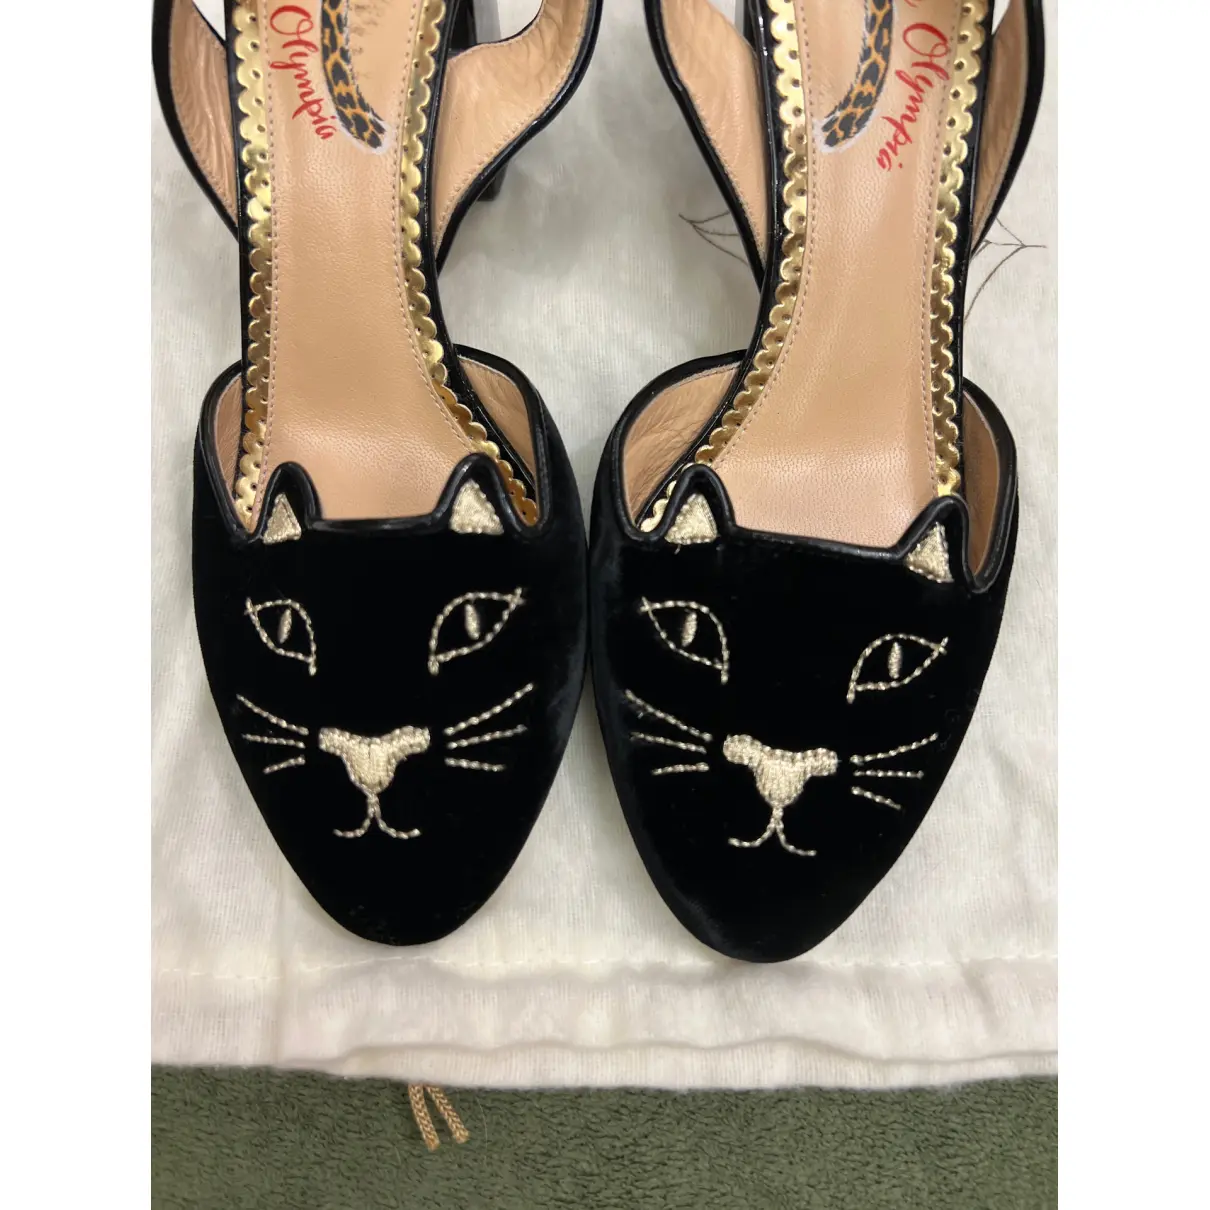 Buy Charlotte Olympia Kitty velvet sandals online